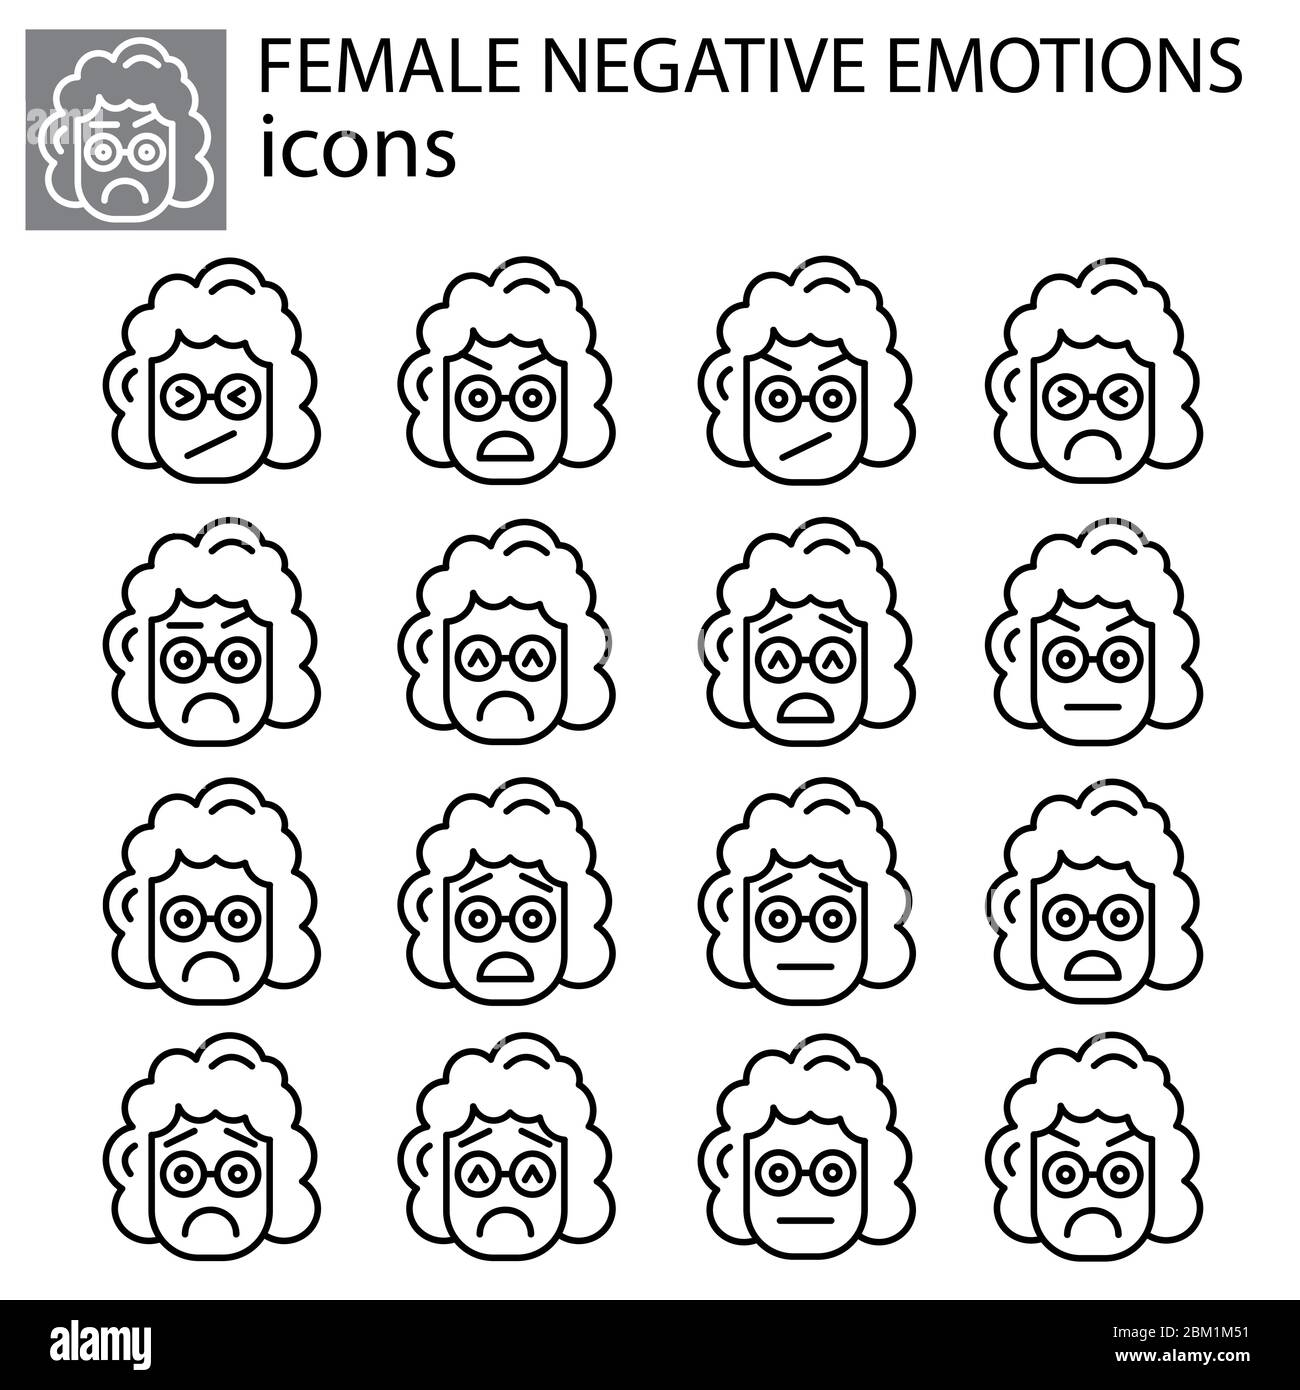 négatif émotions définir vecteur linéaire femelle, fille icône. Signe vecteur d'émoticône d'expression faciale négative, symbole noir sur fond blanc Illustration de Vecteur